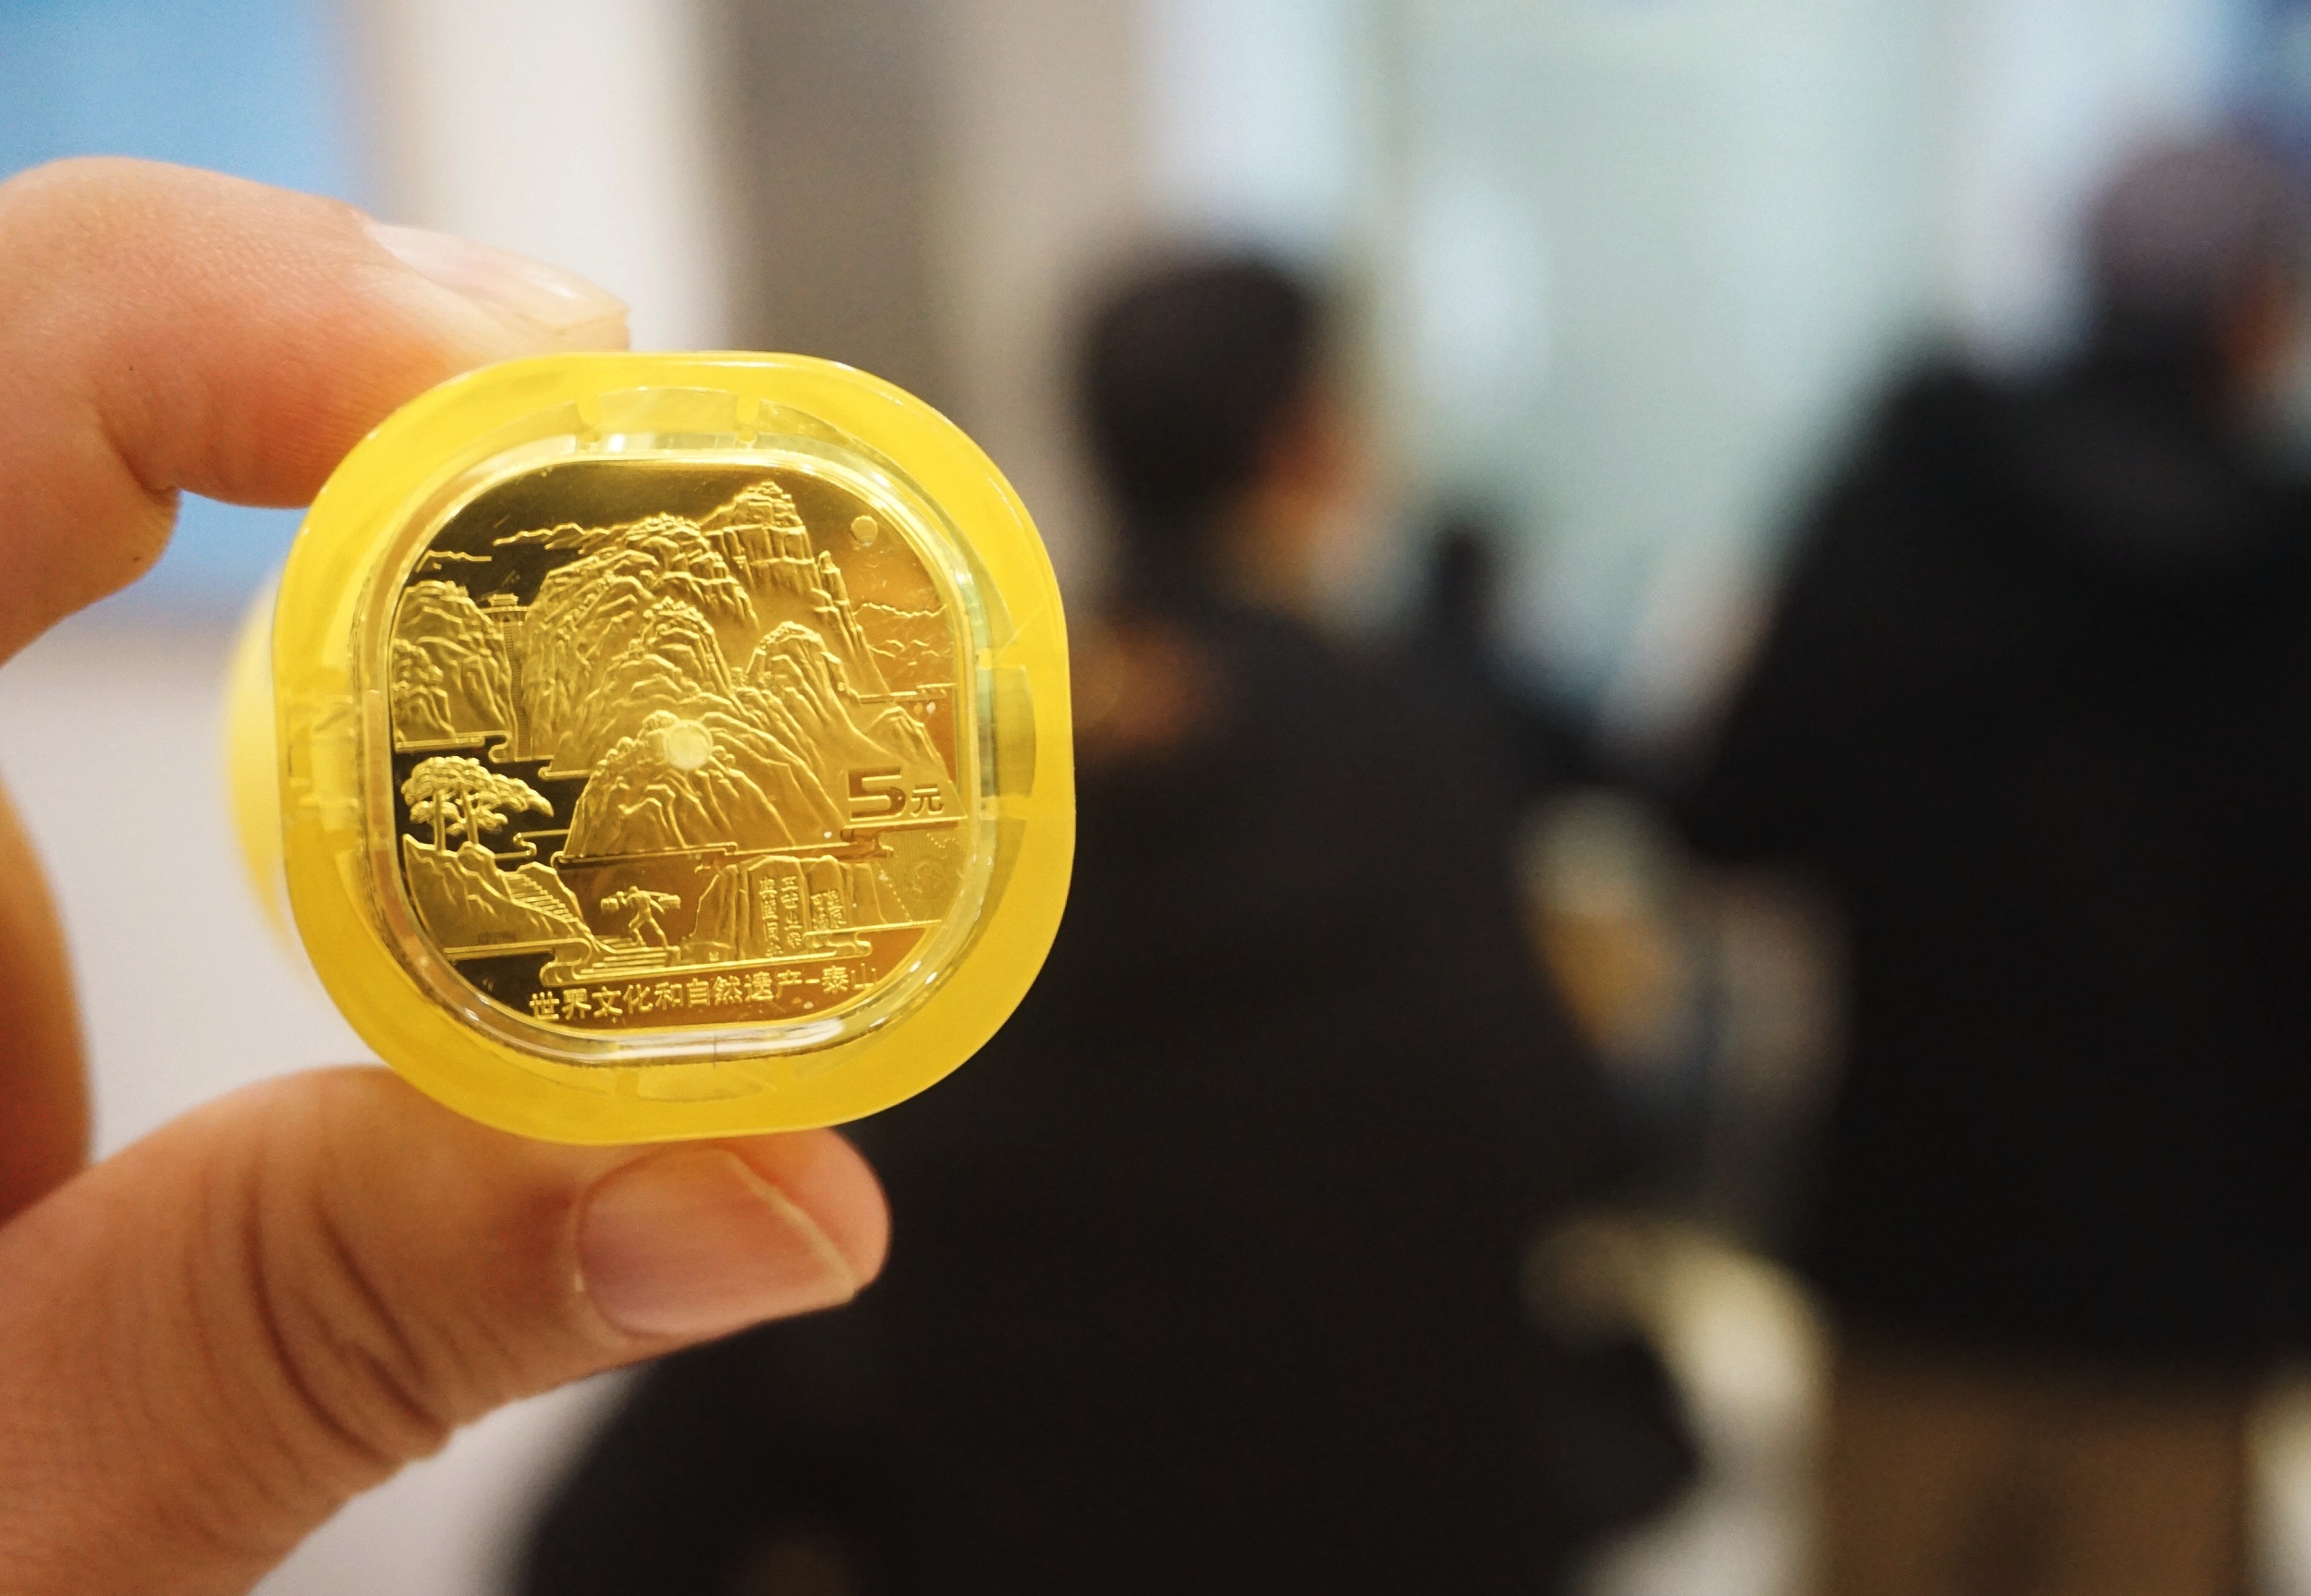 中国首枚异形纪念币“泰山币”发行 市民排队兑换